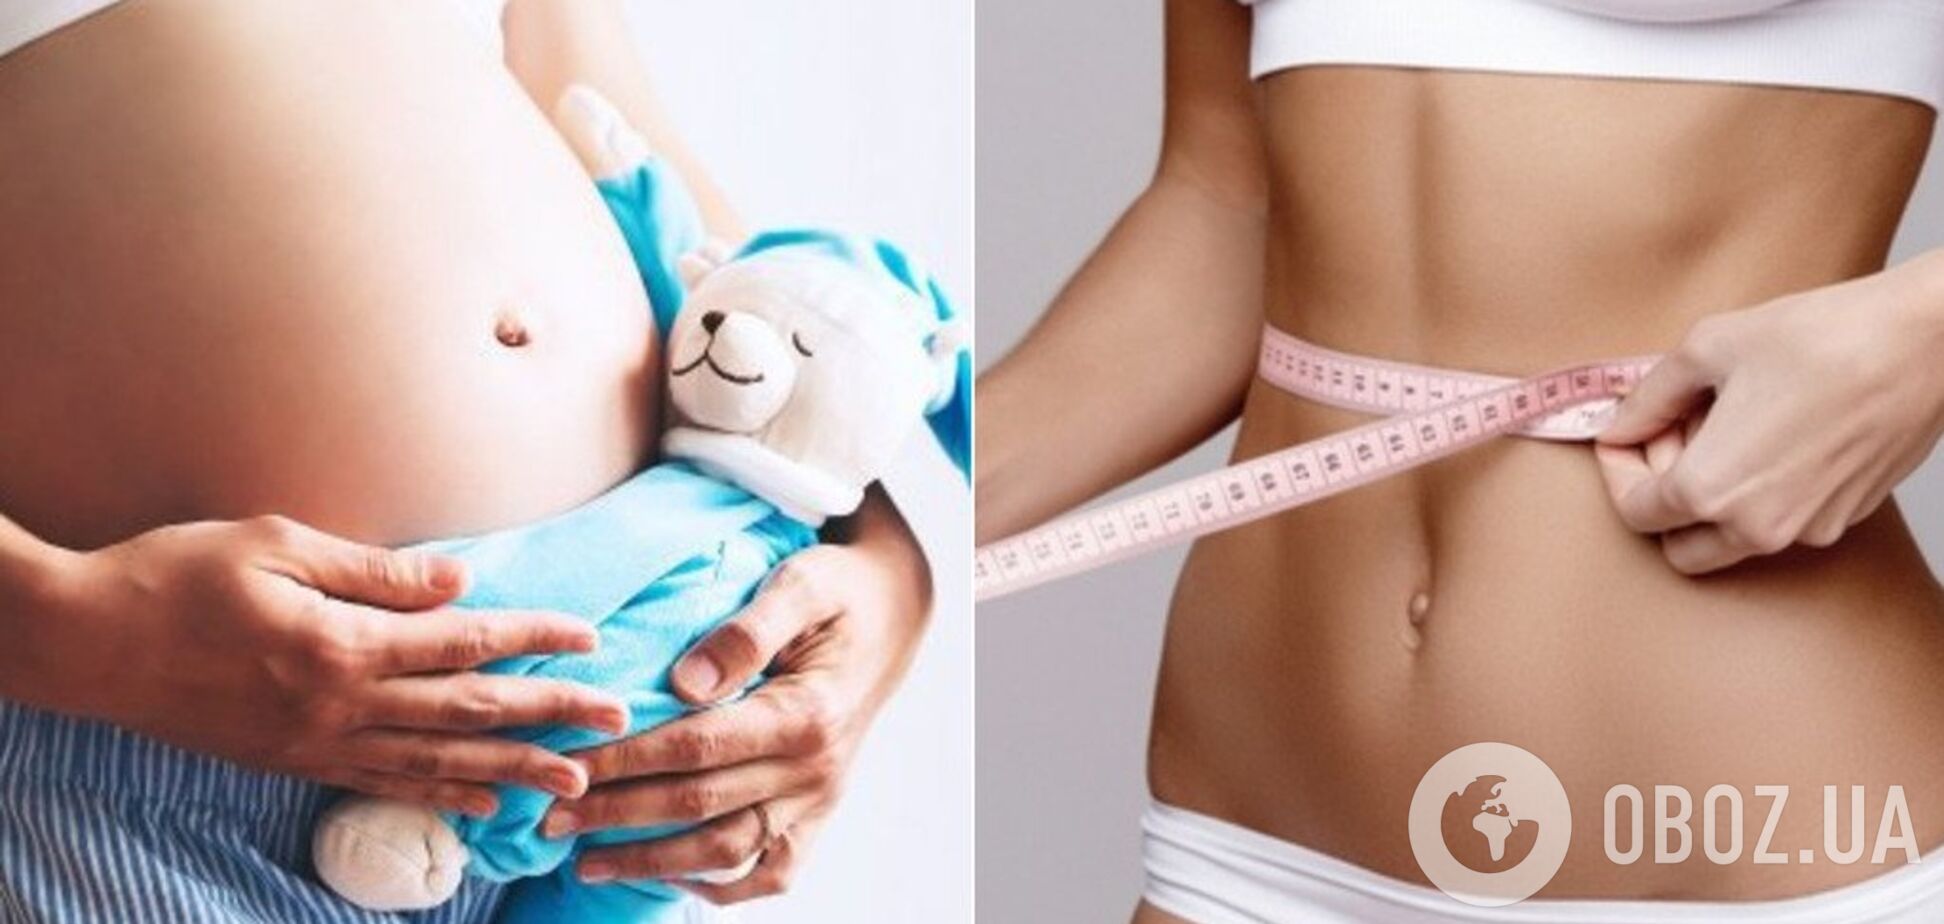 Диетолог назвала эффективный метод борьбы с лишним весом при беременности. Иллюстрация